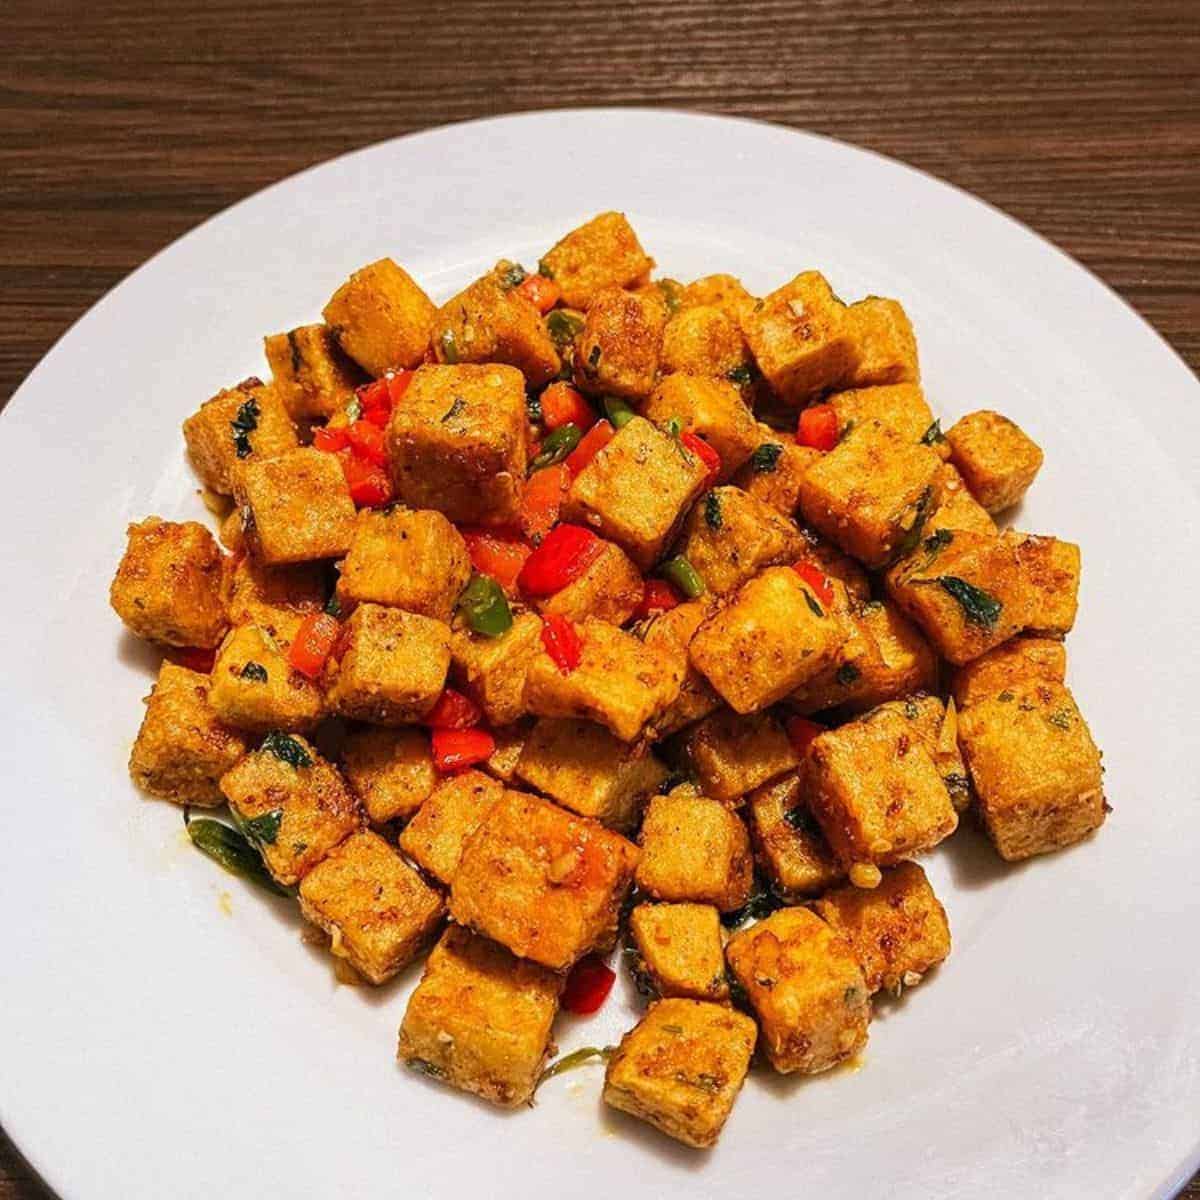 salt and pepper tofu in a plate